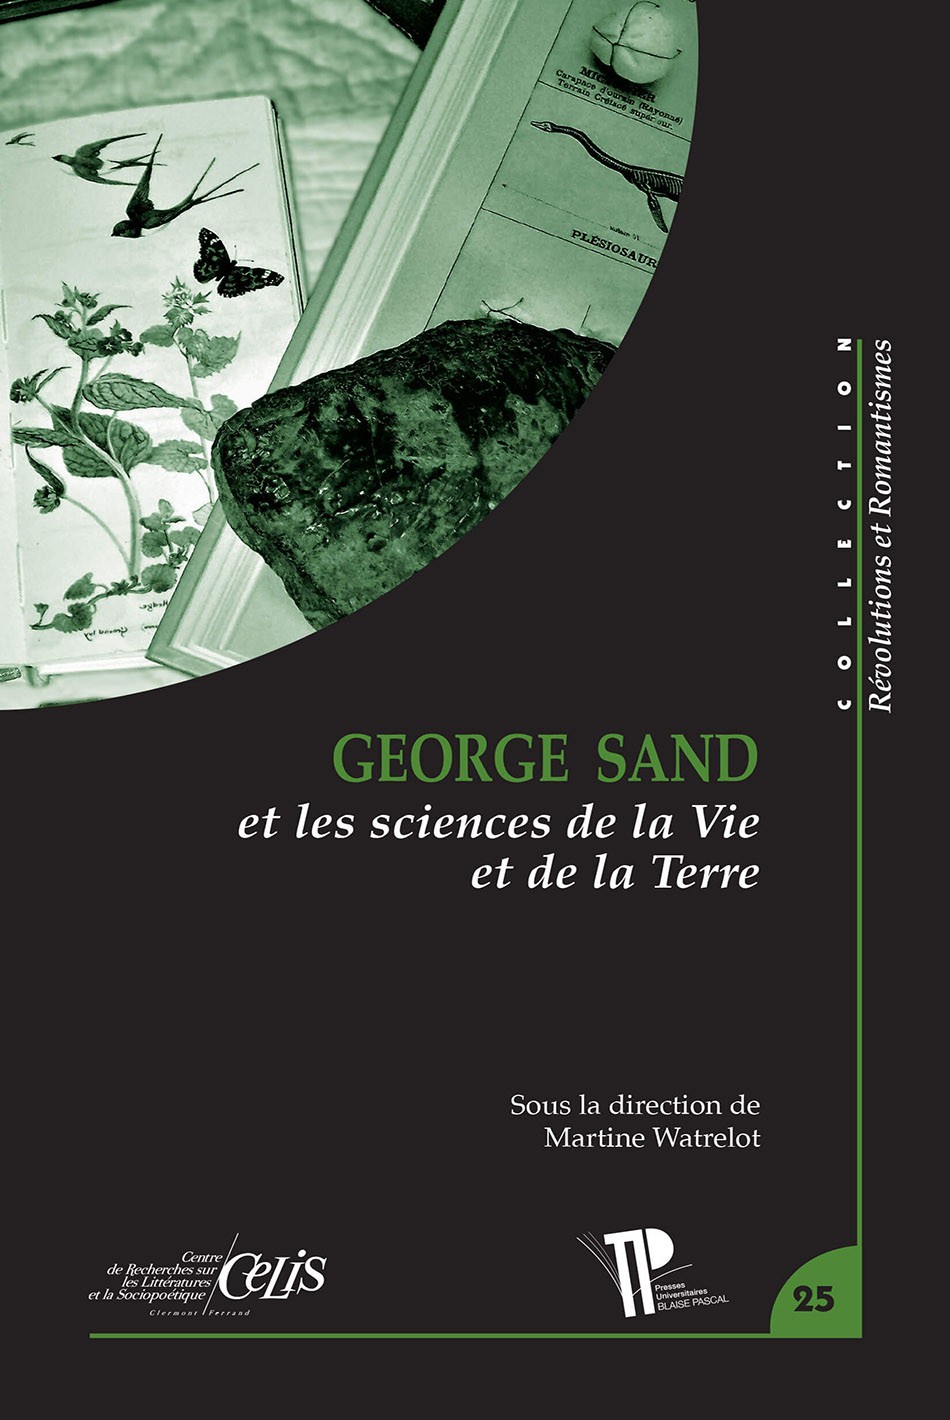 George Sand et les sciences de la Vie et de la Terre